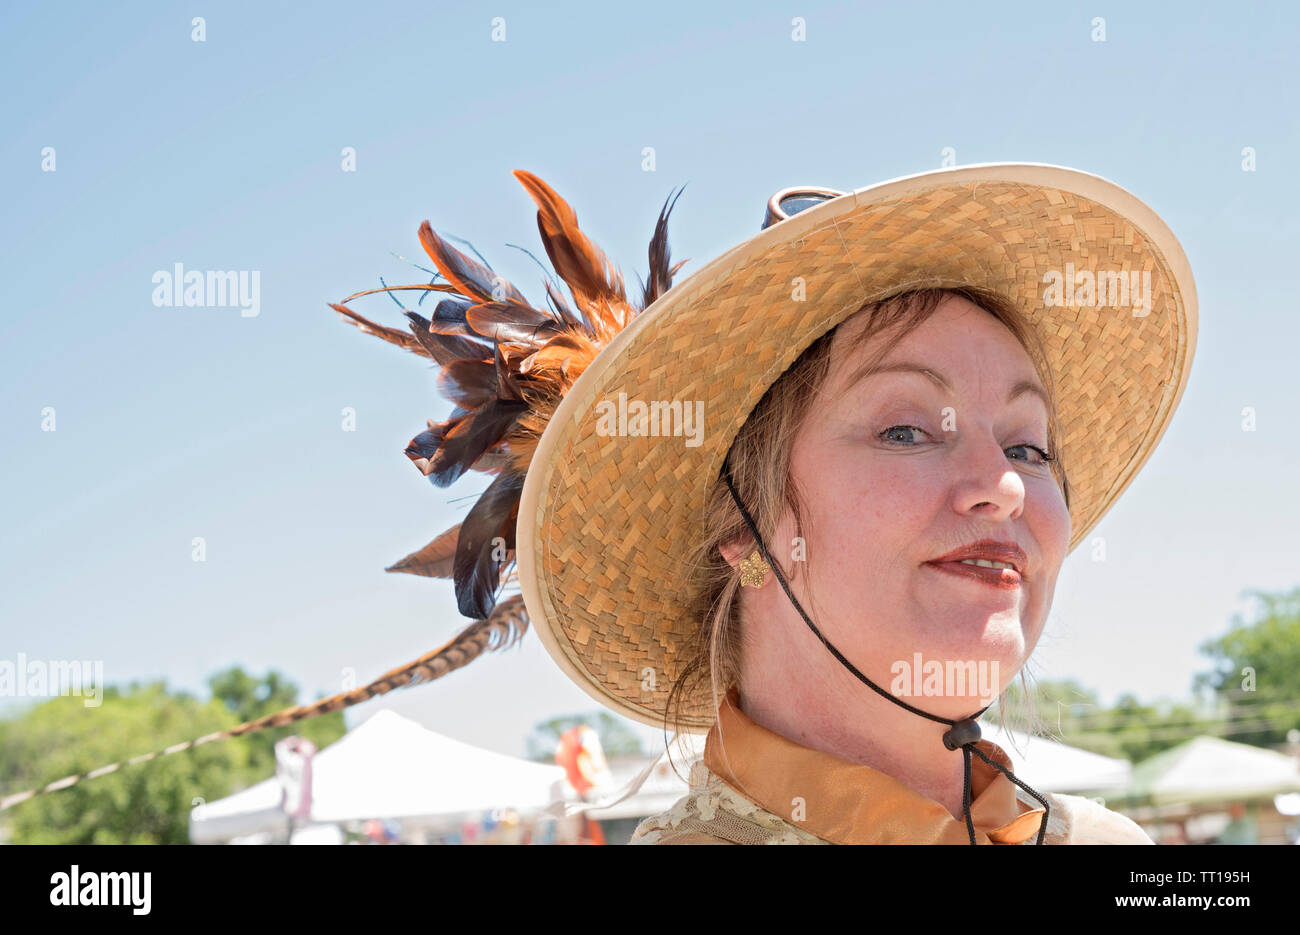 Pioneer Tage kleine Stadt jährliche Feier in North Central Florida. Eines der Zeichen Schauspielerinnen hat eine coy Ausdruck für die Kamera. Stockfoto